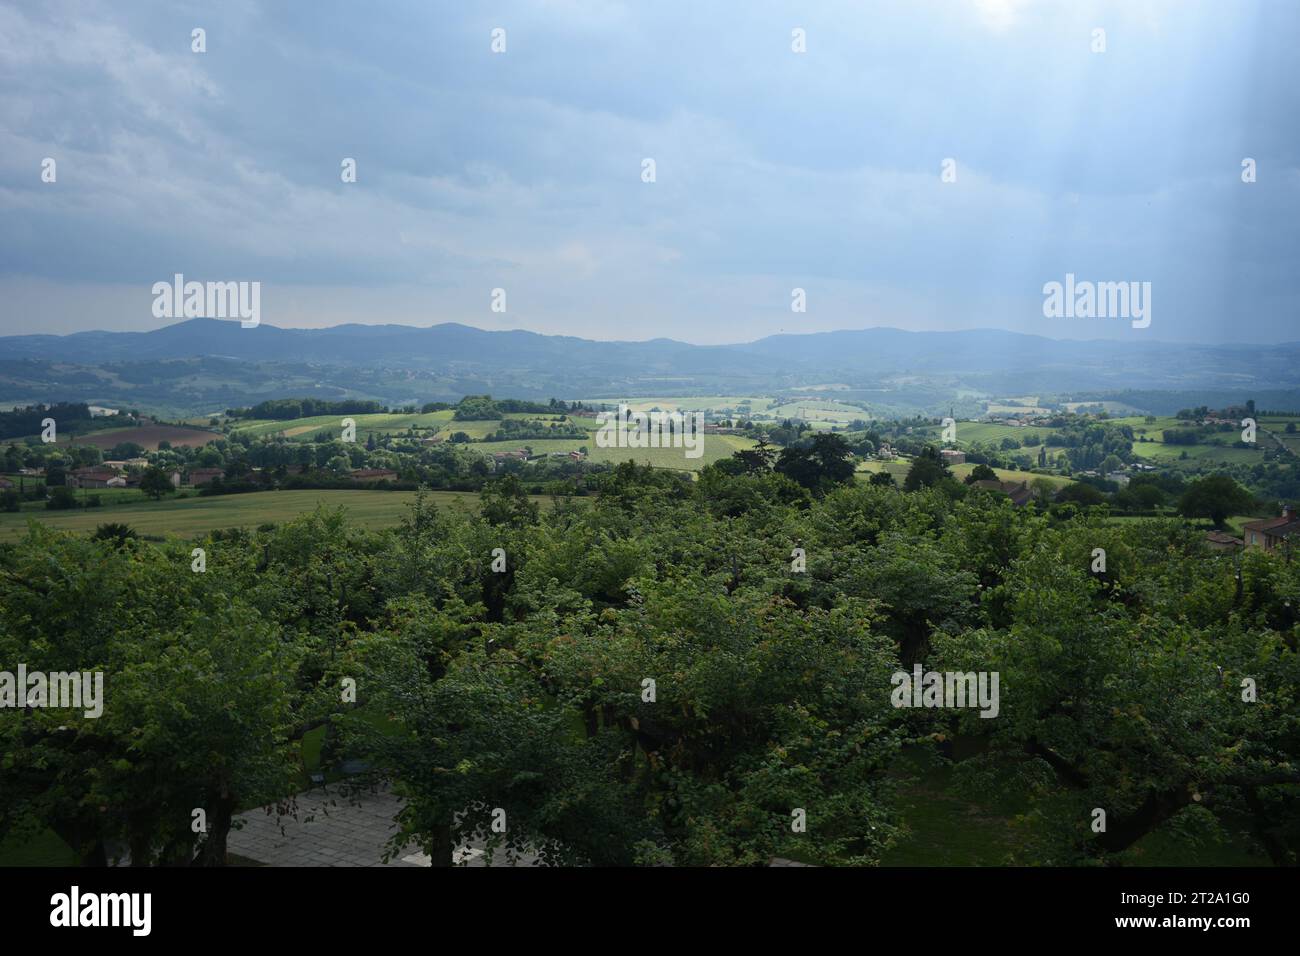 La pluie grouille et la lumière tamisée, regardant à travers le verger de cerisiers dans la vallée verdoyante, les terres agricoles et les collines ondulantes, le Bois-d'Oingt, France Banque D'Images